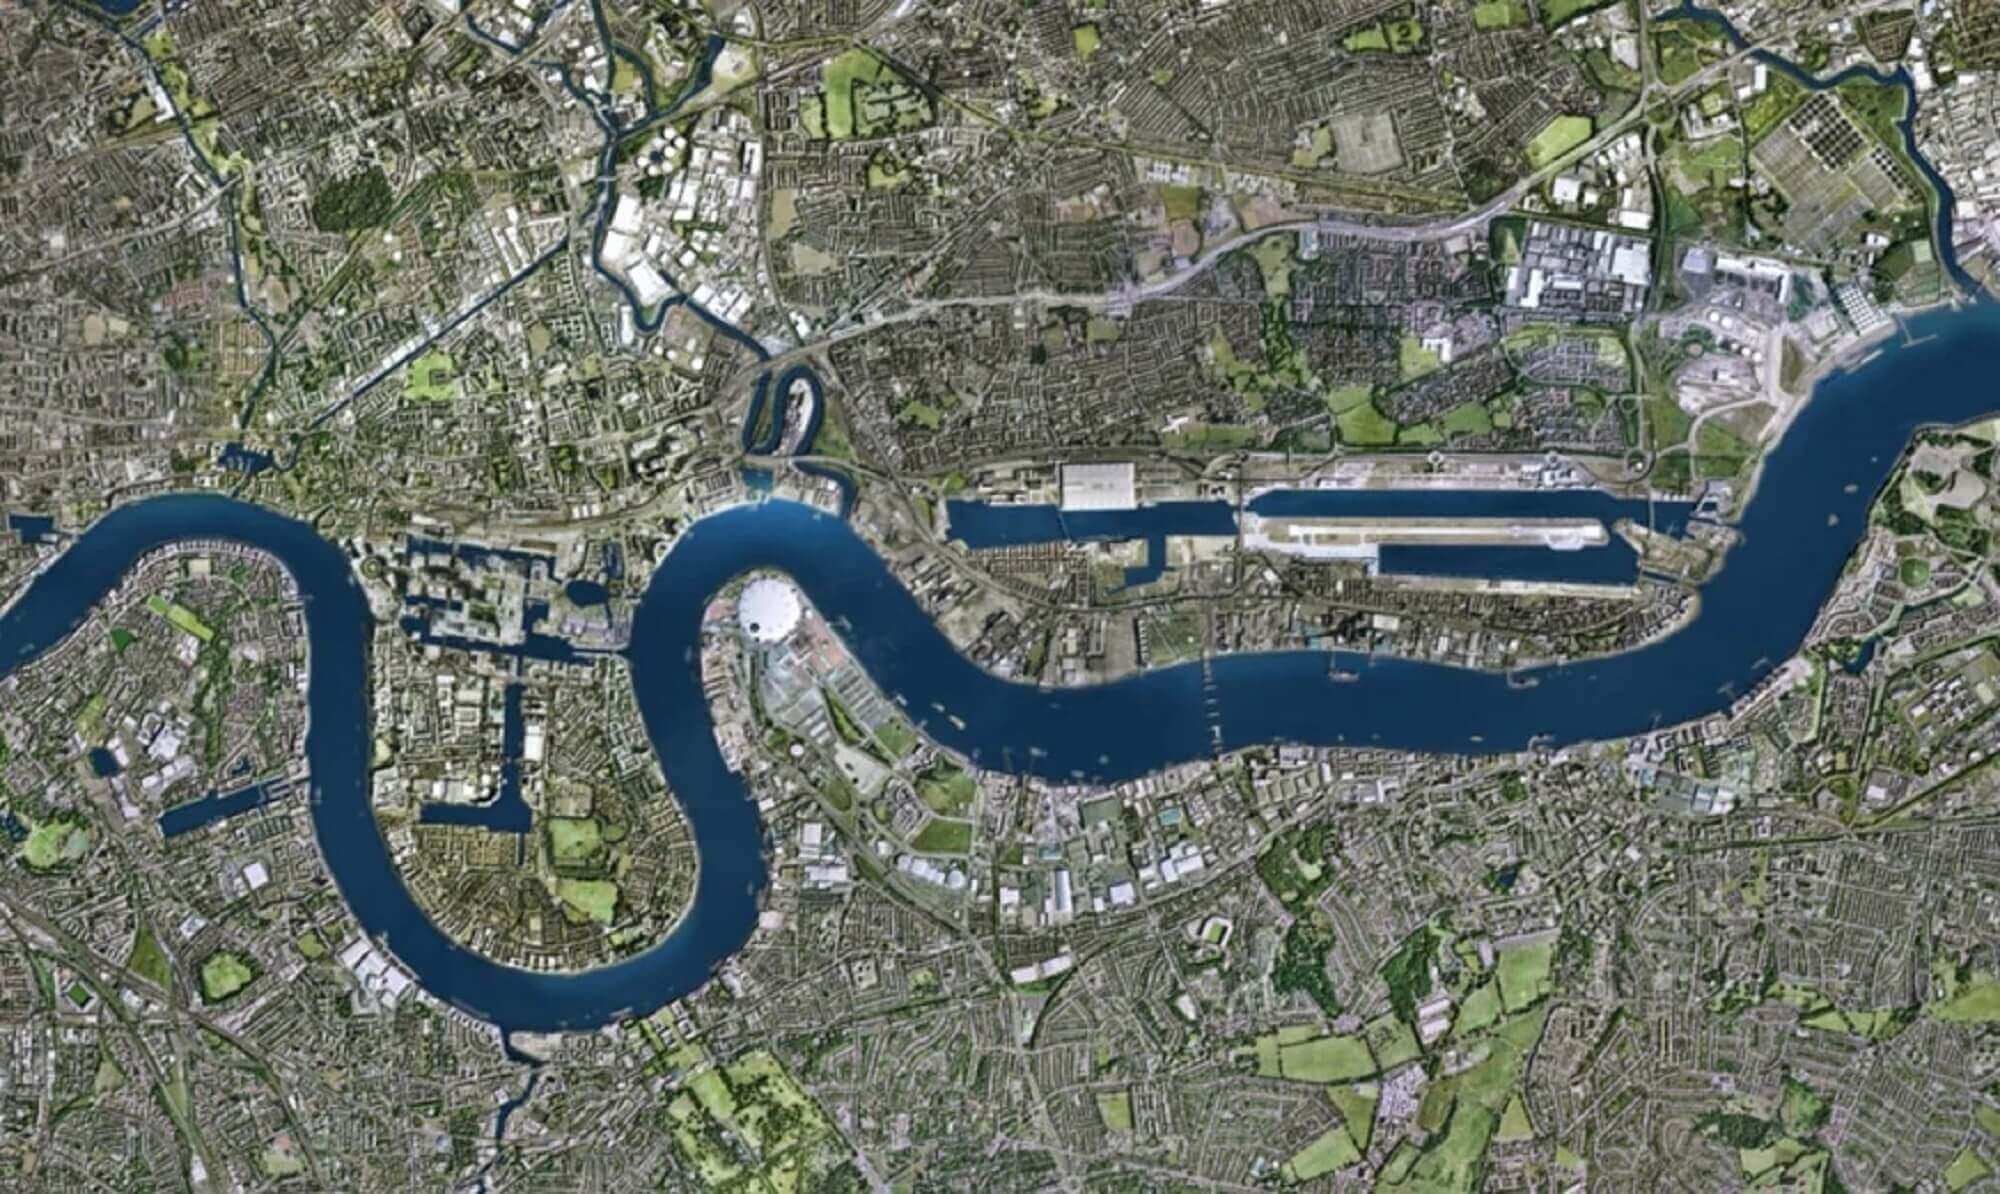 Eastenders Map Of London